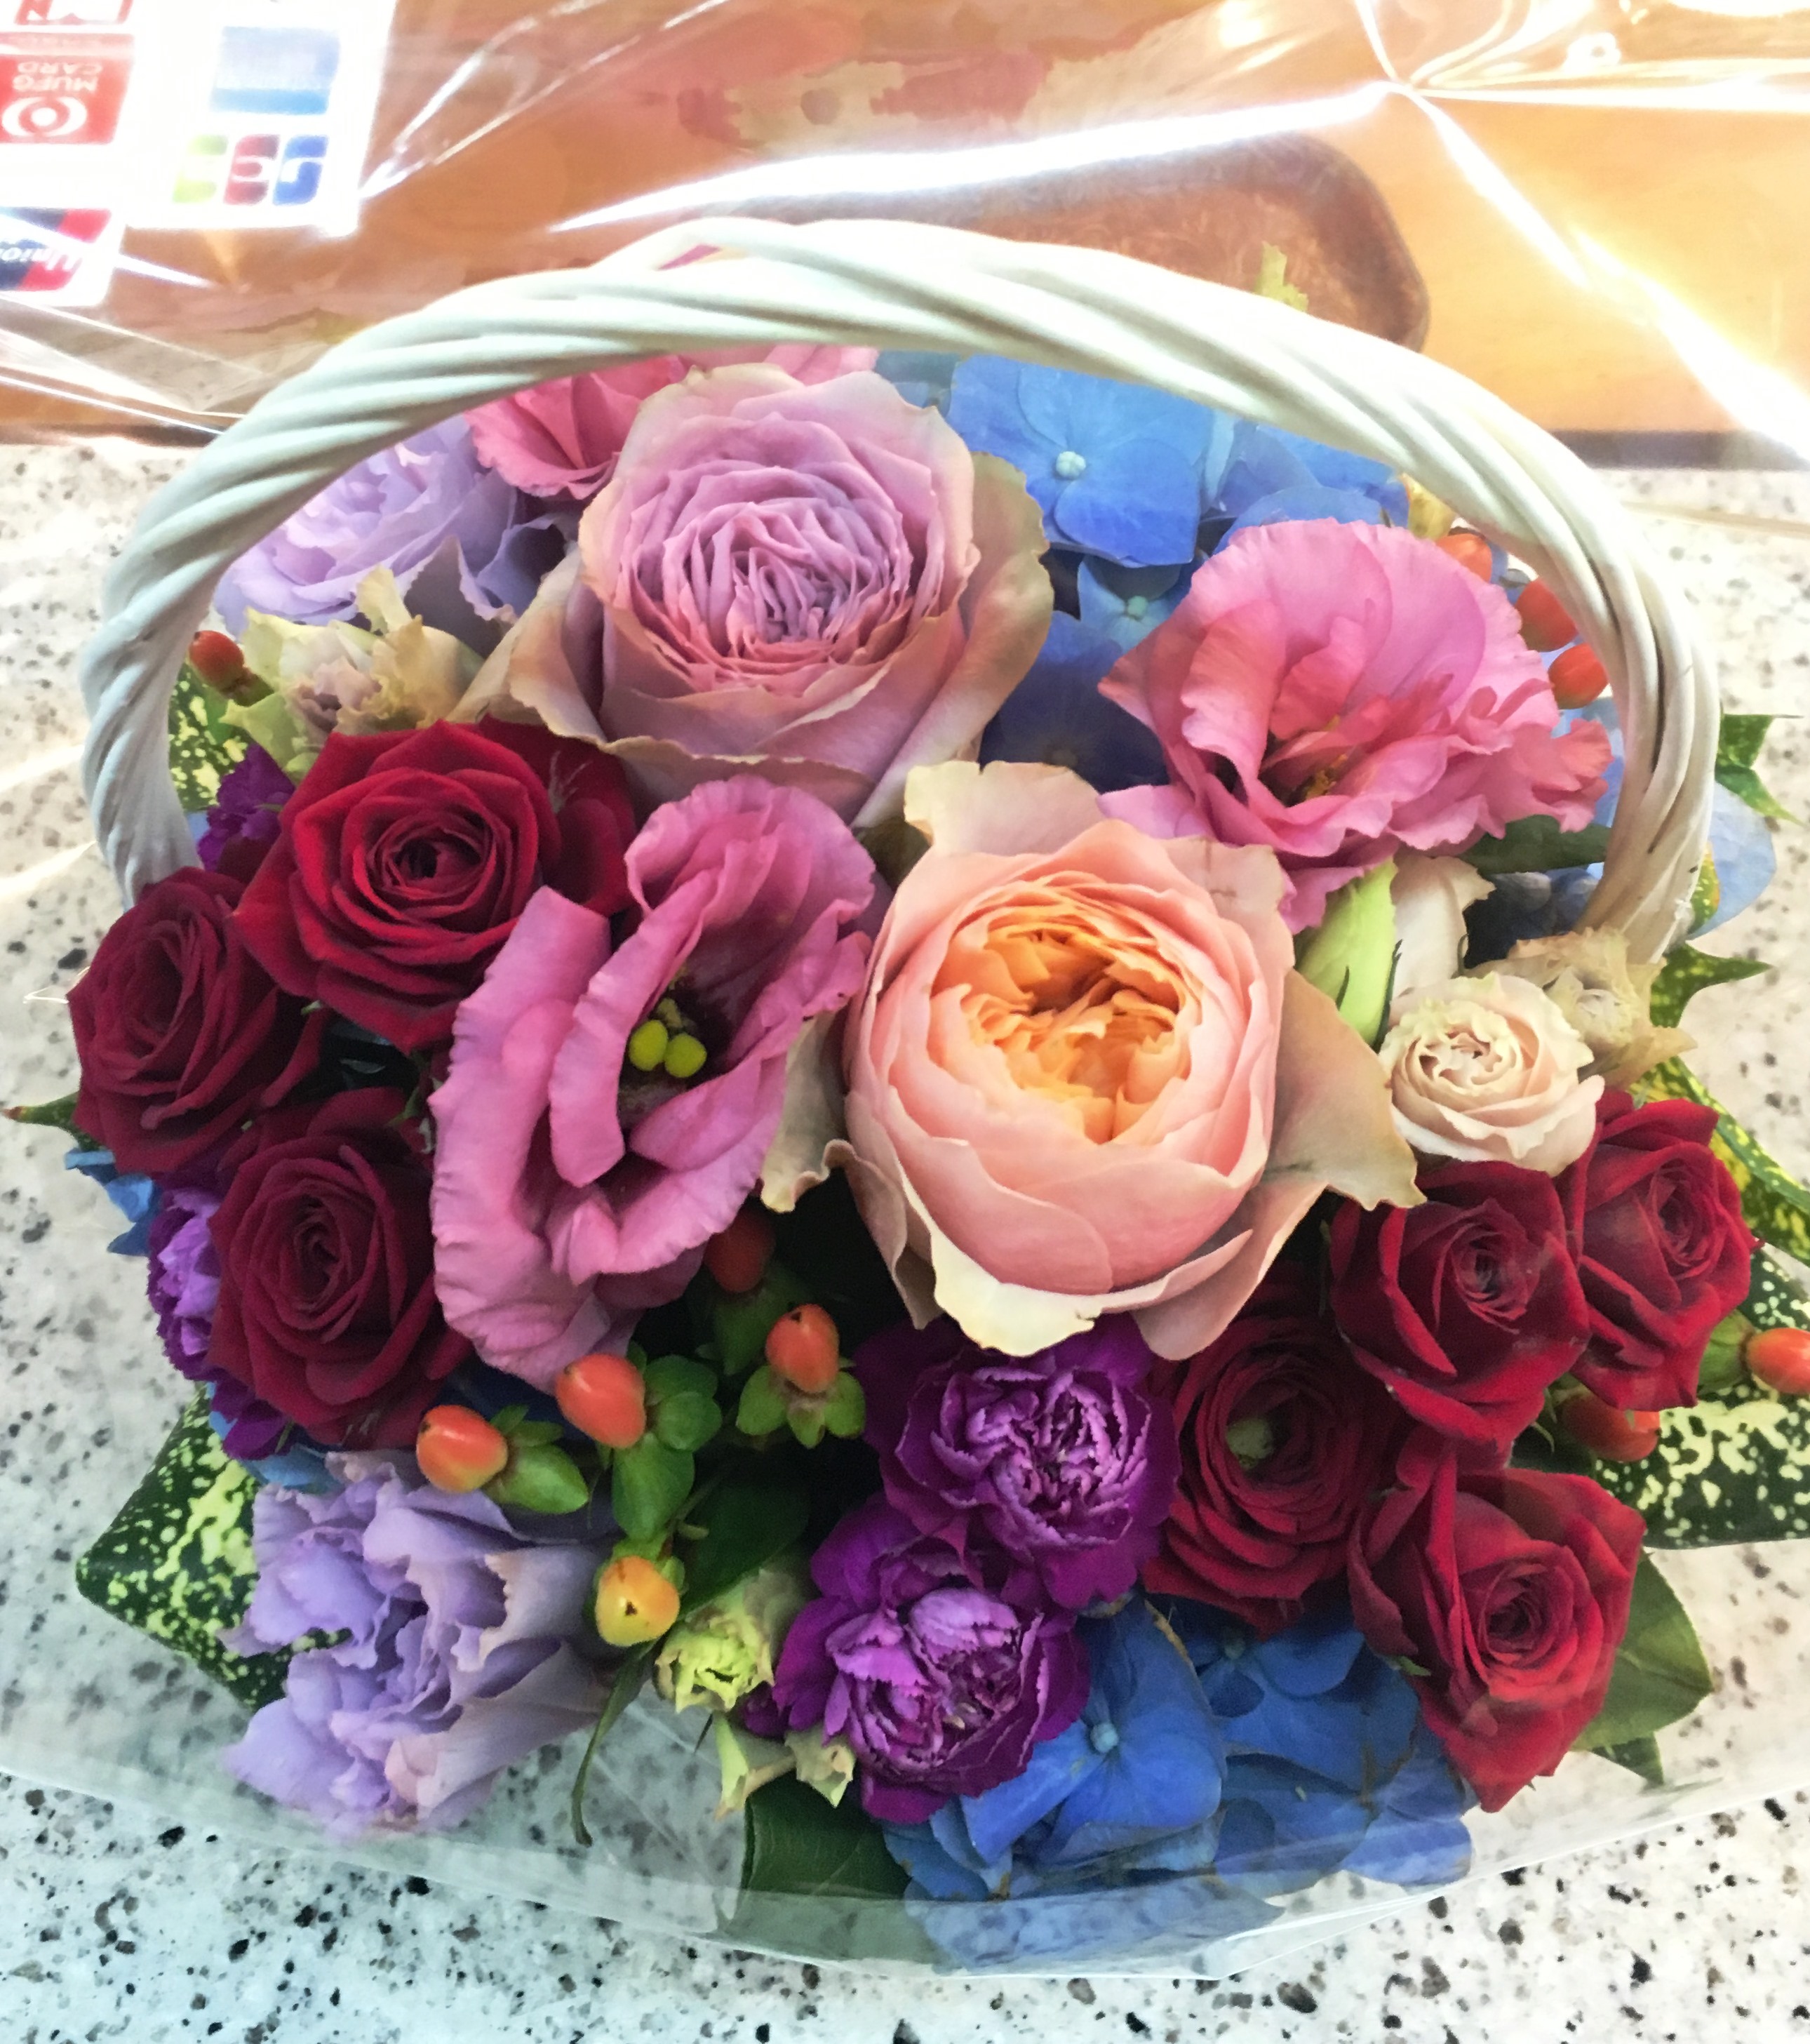 【ナオ花屋の納品事例75】横浜市金港町の法人企業様へスタンド花を配達しました！